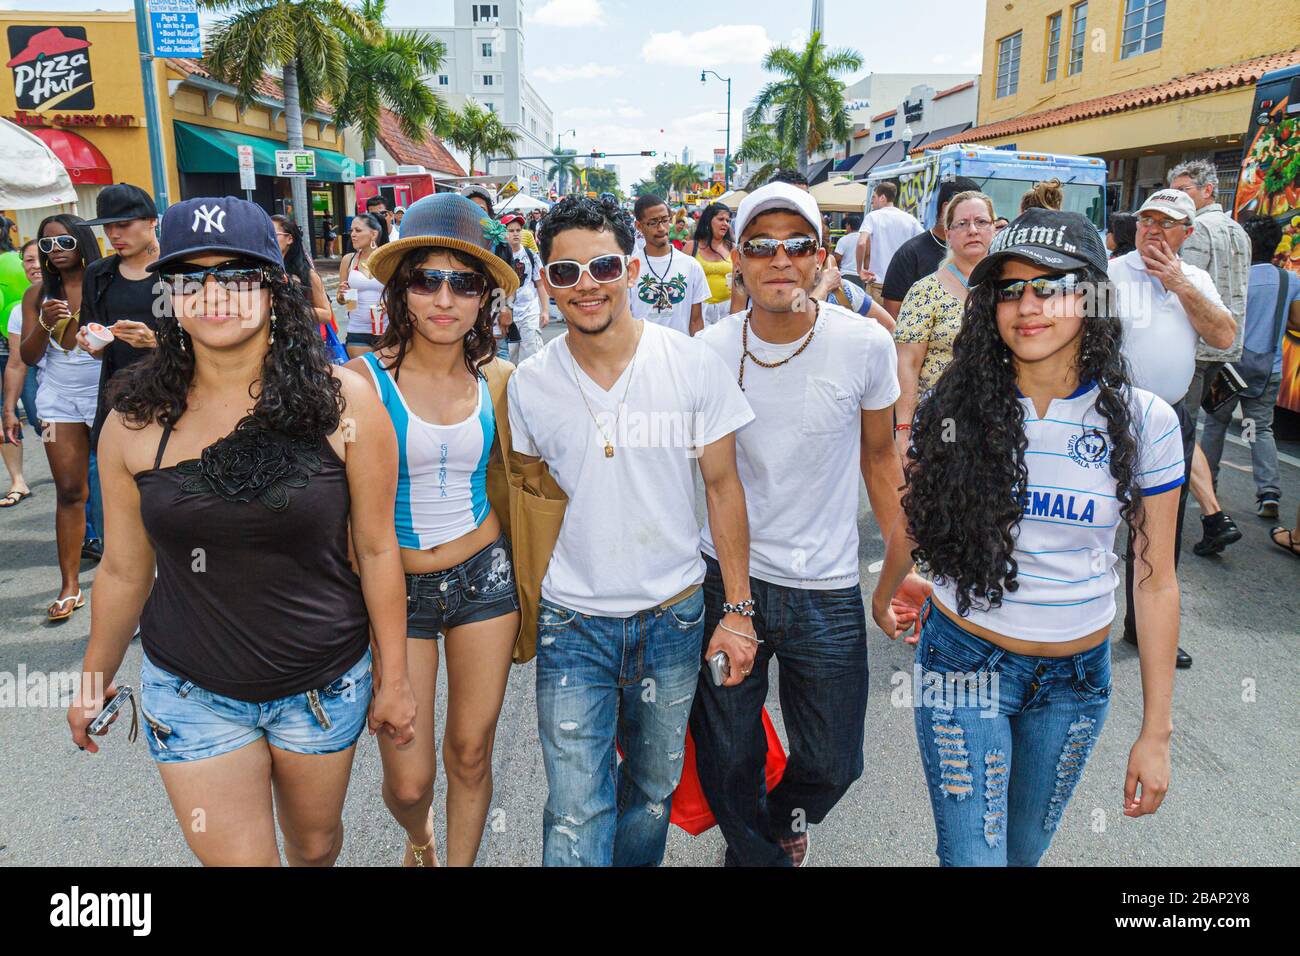 Miami Florida, Little Havana, Calle Ocho Street Festival, Hispanic Latino ethnische Einwanderer Minderheit, Veranstaltung, Feier, Erwachsene Erwachsene Mann m Stockfoto